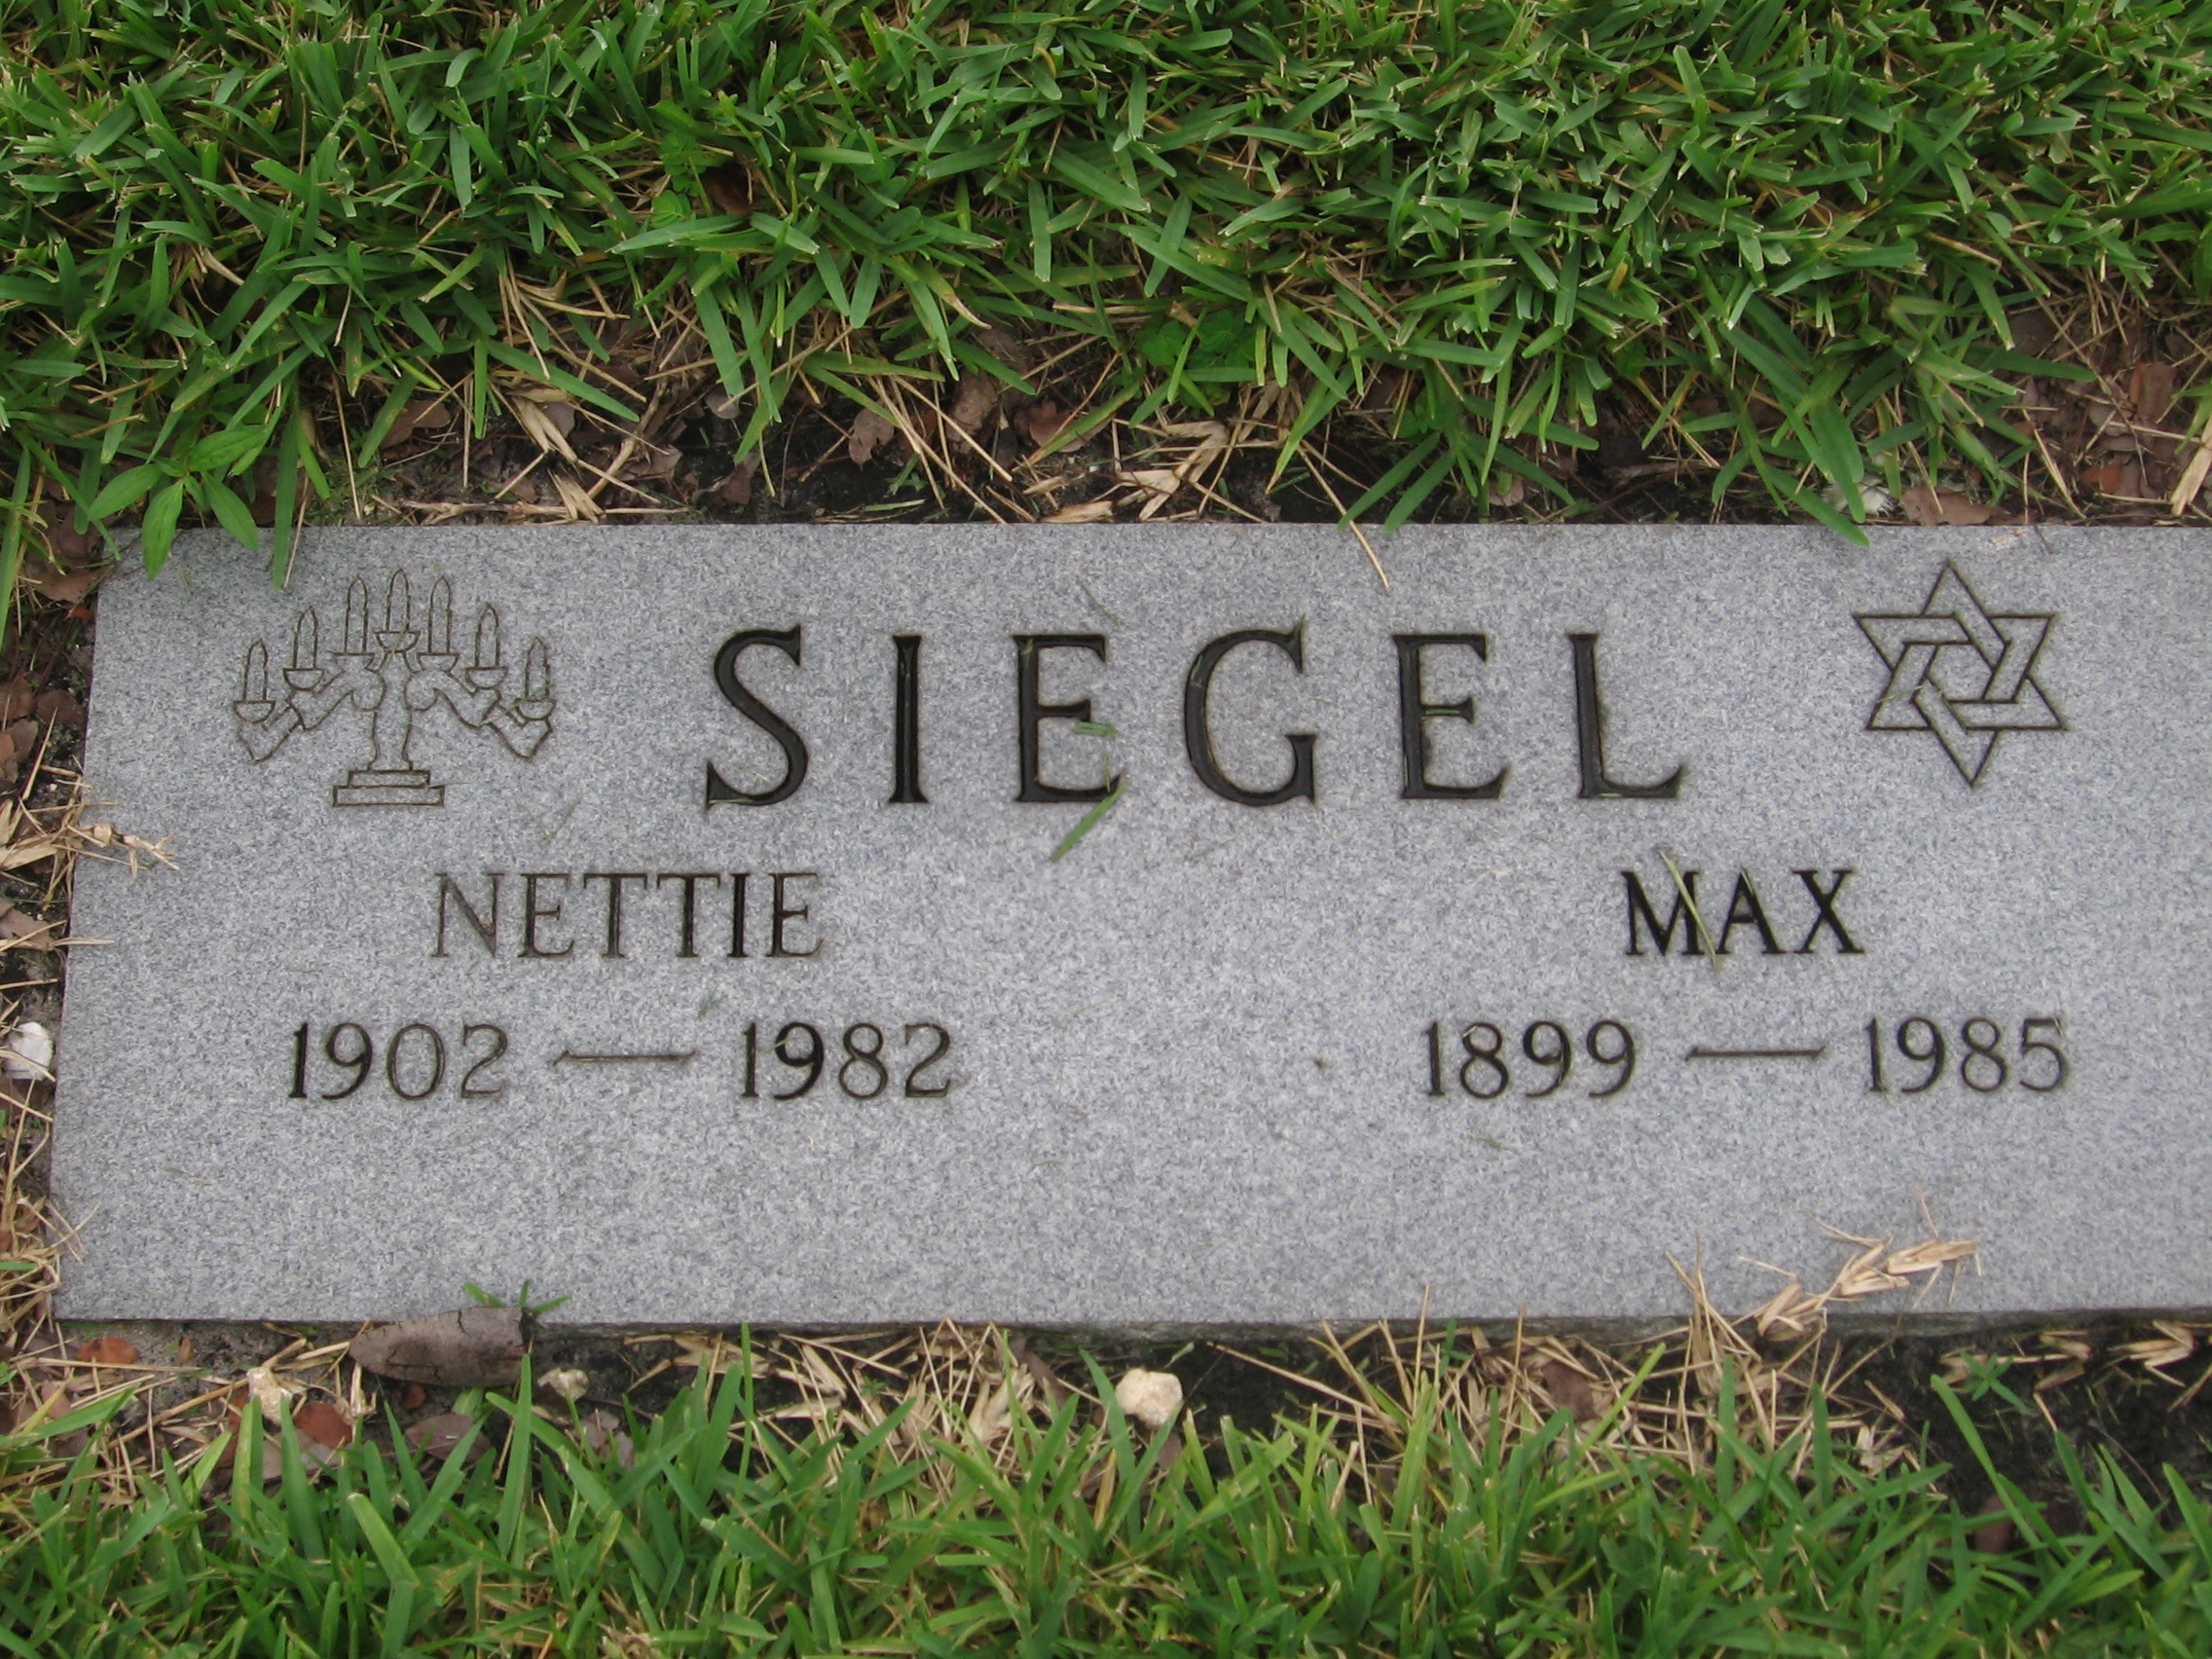 Nettie Siegel